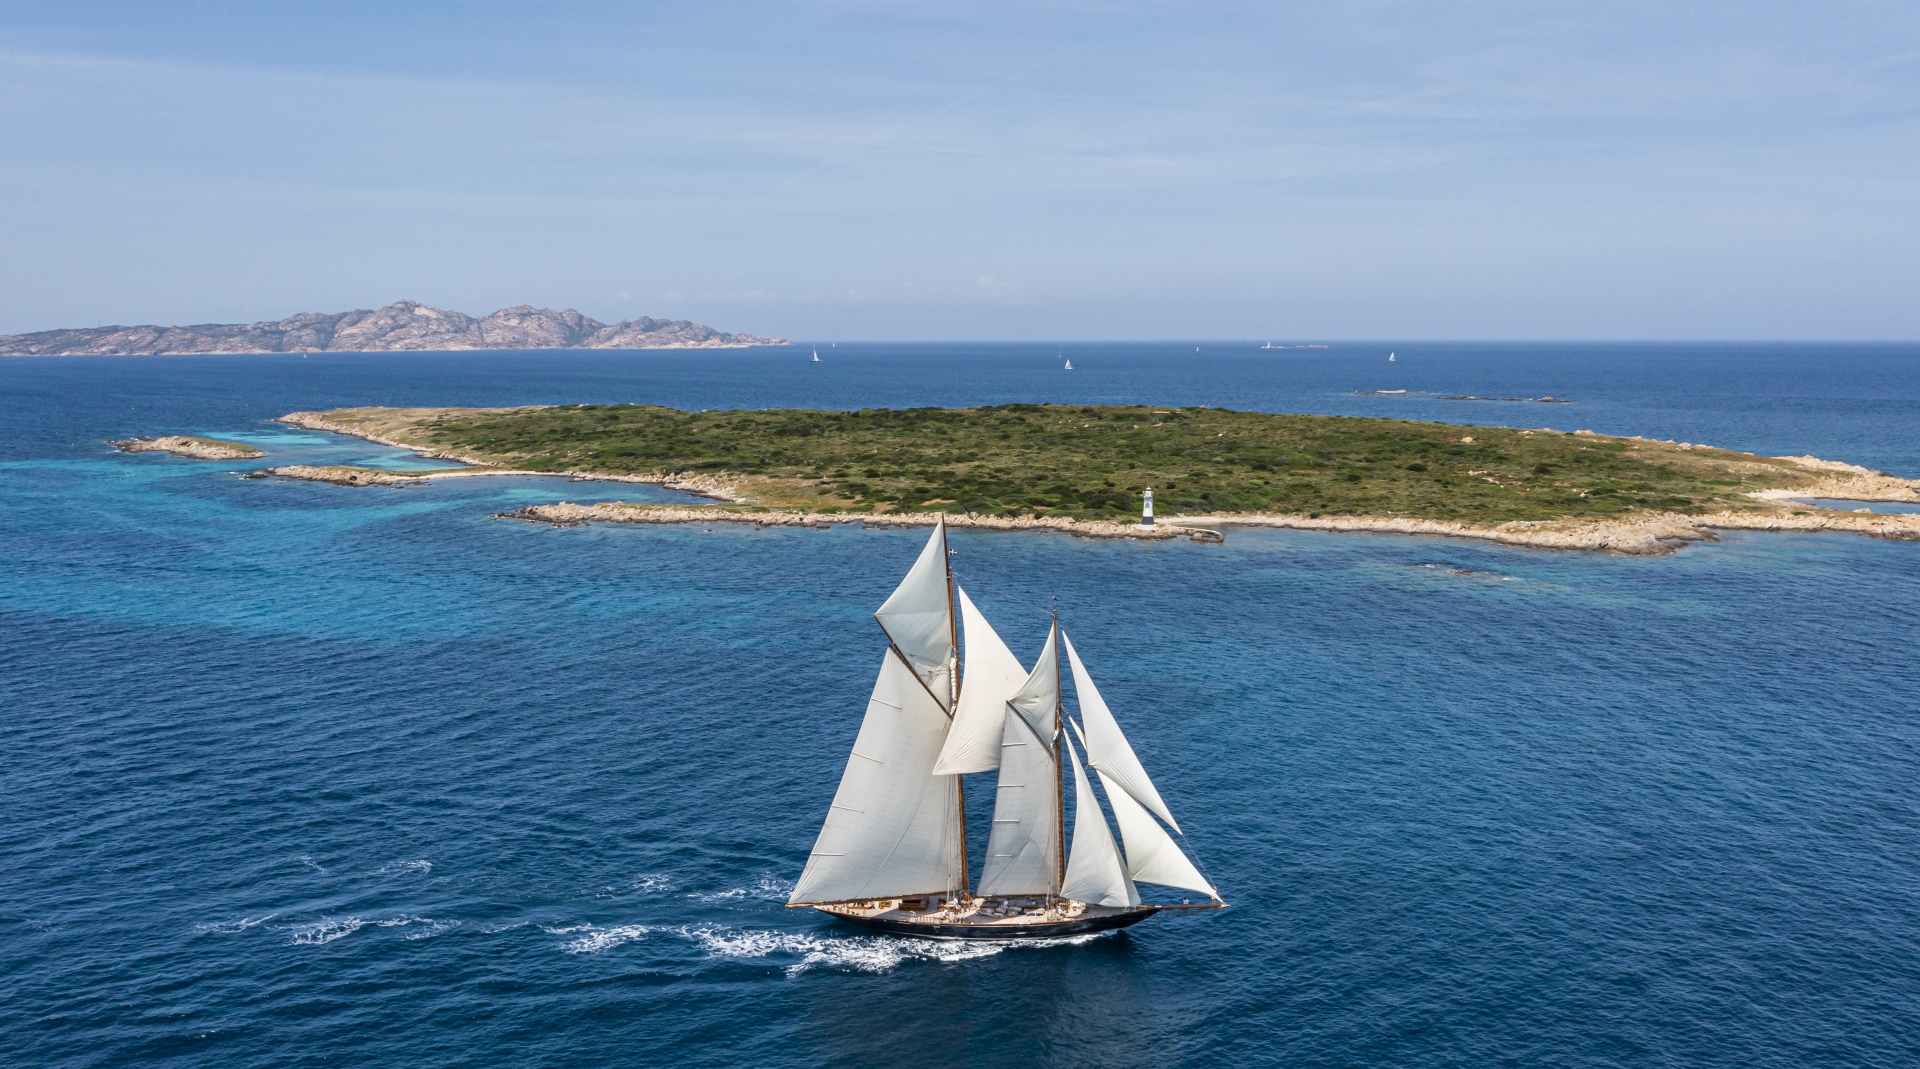 Giorgio Armani Superyacht Regatta, secondo giorno tra le isole dell’Arcipelago di La Maddalena - NEWS - Yacht Club Costa Smeralda